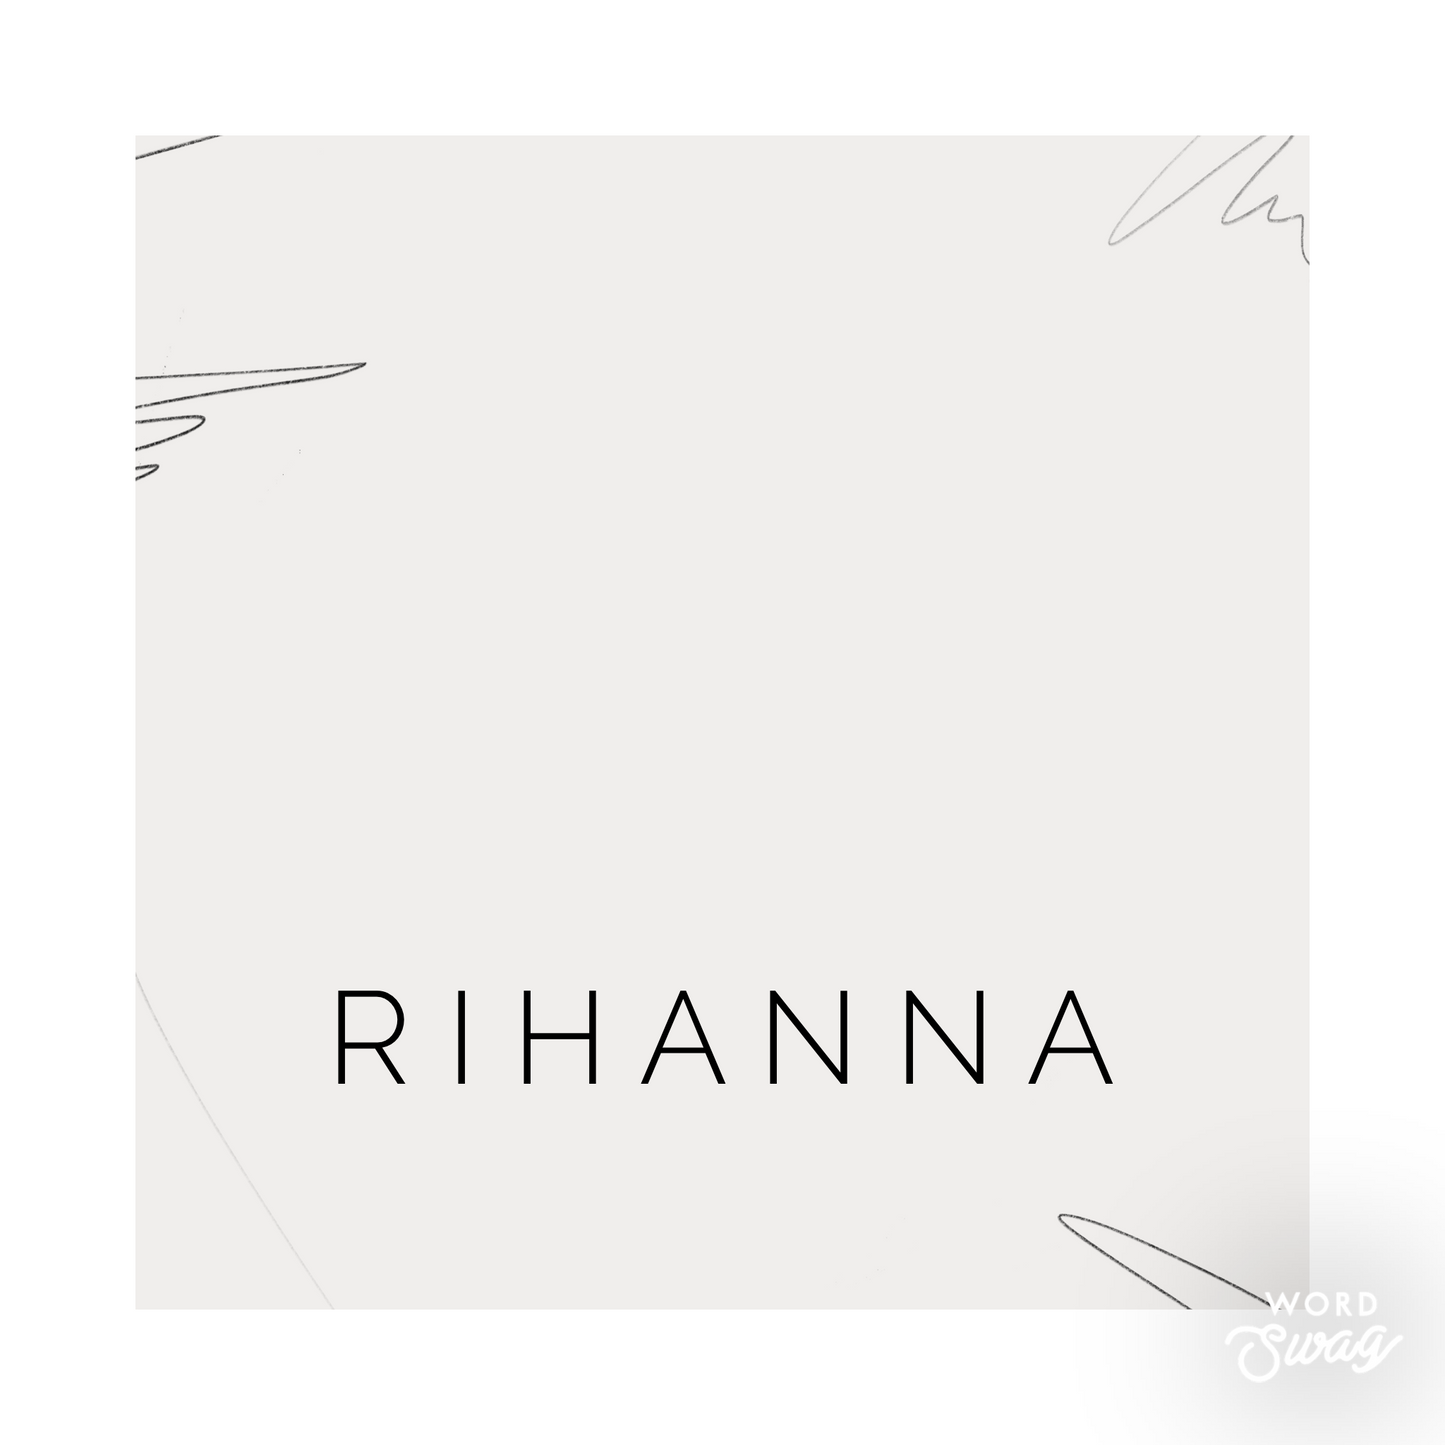 Rihanna-preorder